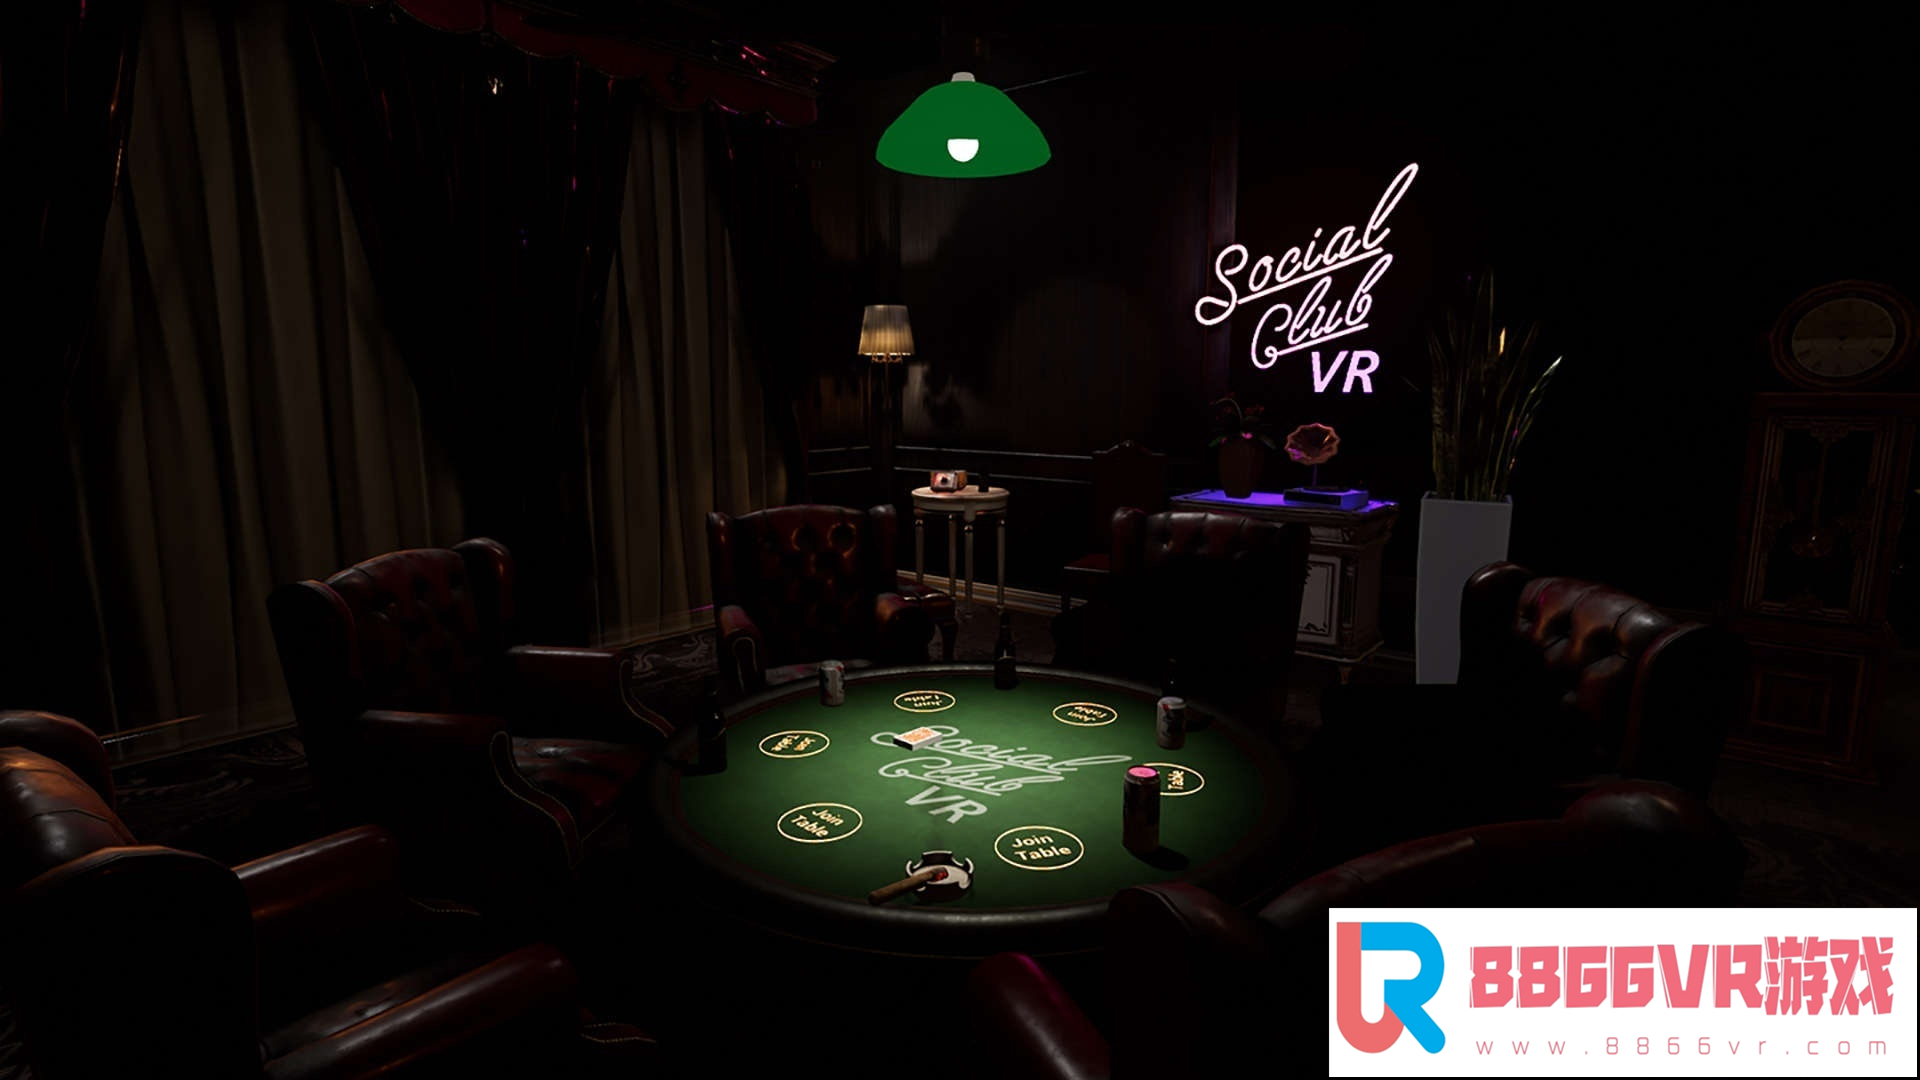 [VR交流学习] 联谊俱乐部 VR (Social Club VR : Casino Nights)6701 作者:307836997 帖子ID:170 破解,联谊,俱乐部,social,club